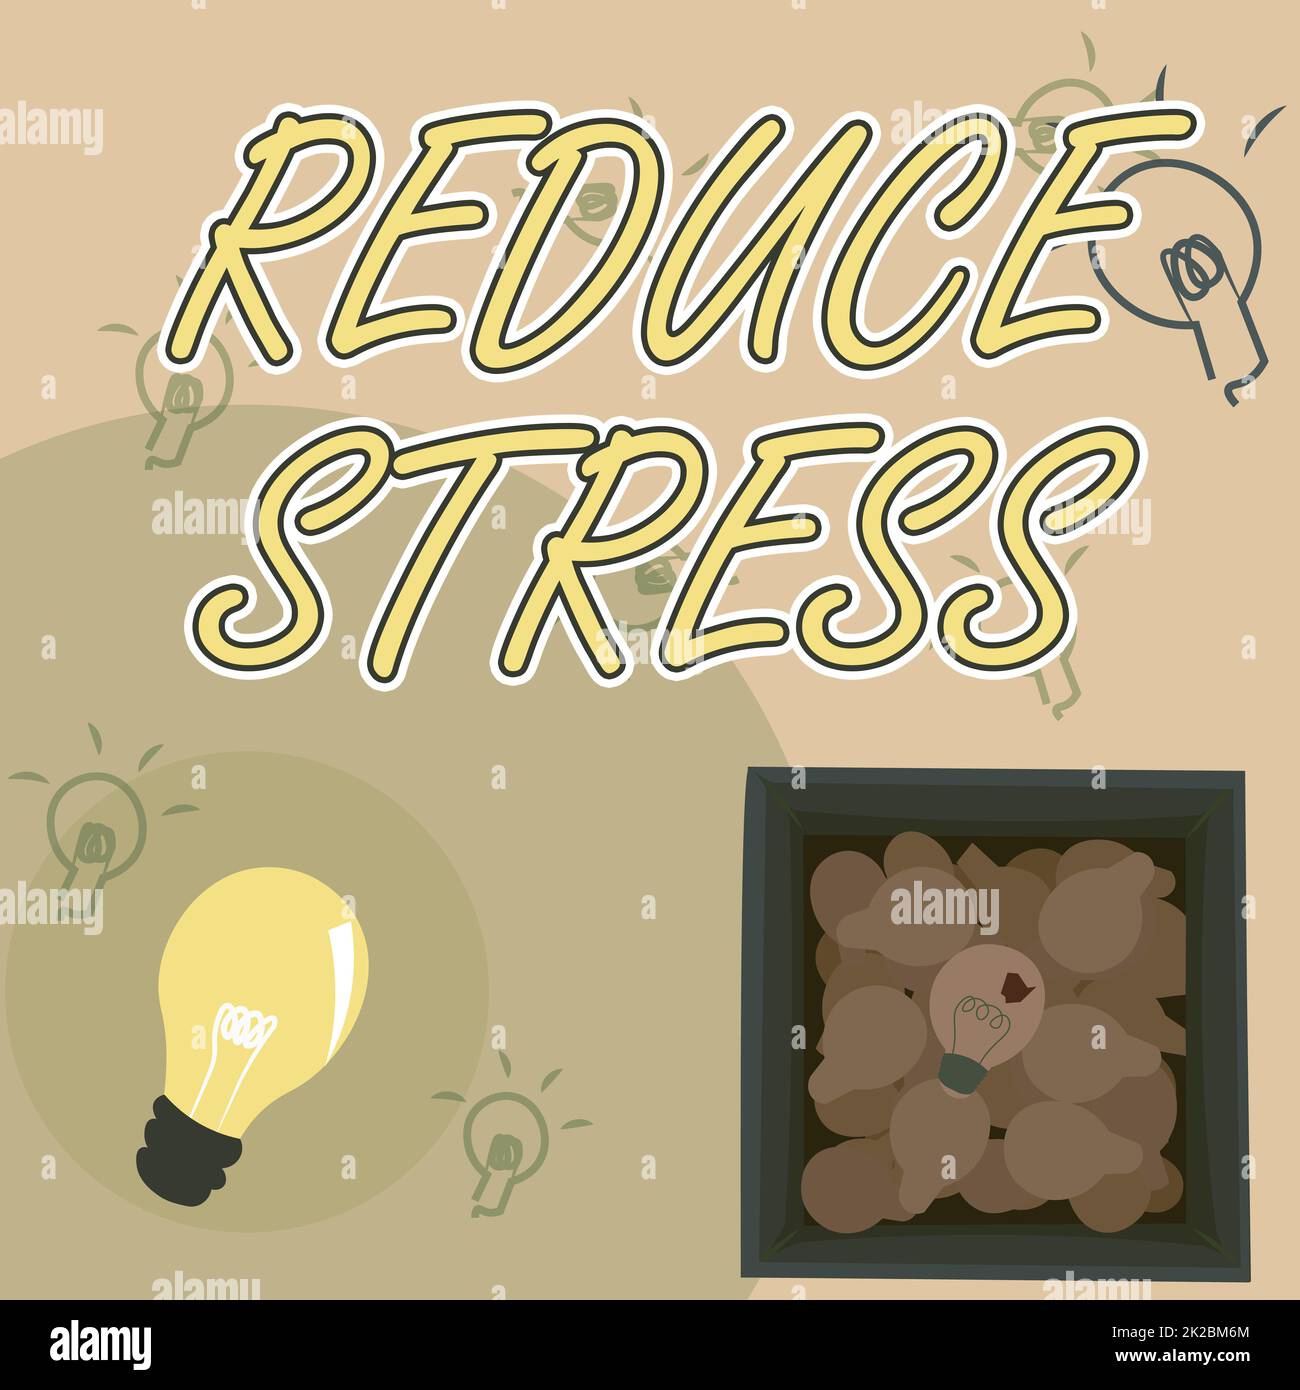 Textzeichen für „Stress reduzieren“. Konzept bedeutet, Spannungen abzubauen und sich für einen hochwertigen Lifestyle zu engagieren Glühbirnen in Box Entdecken Sie neue Entdeckungen. Stockfoto